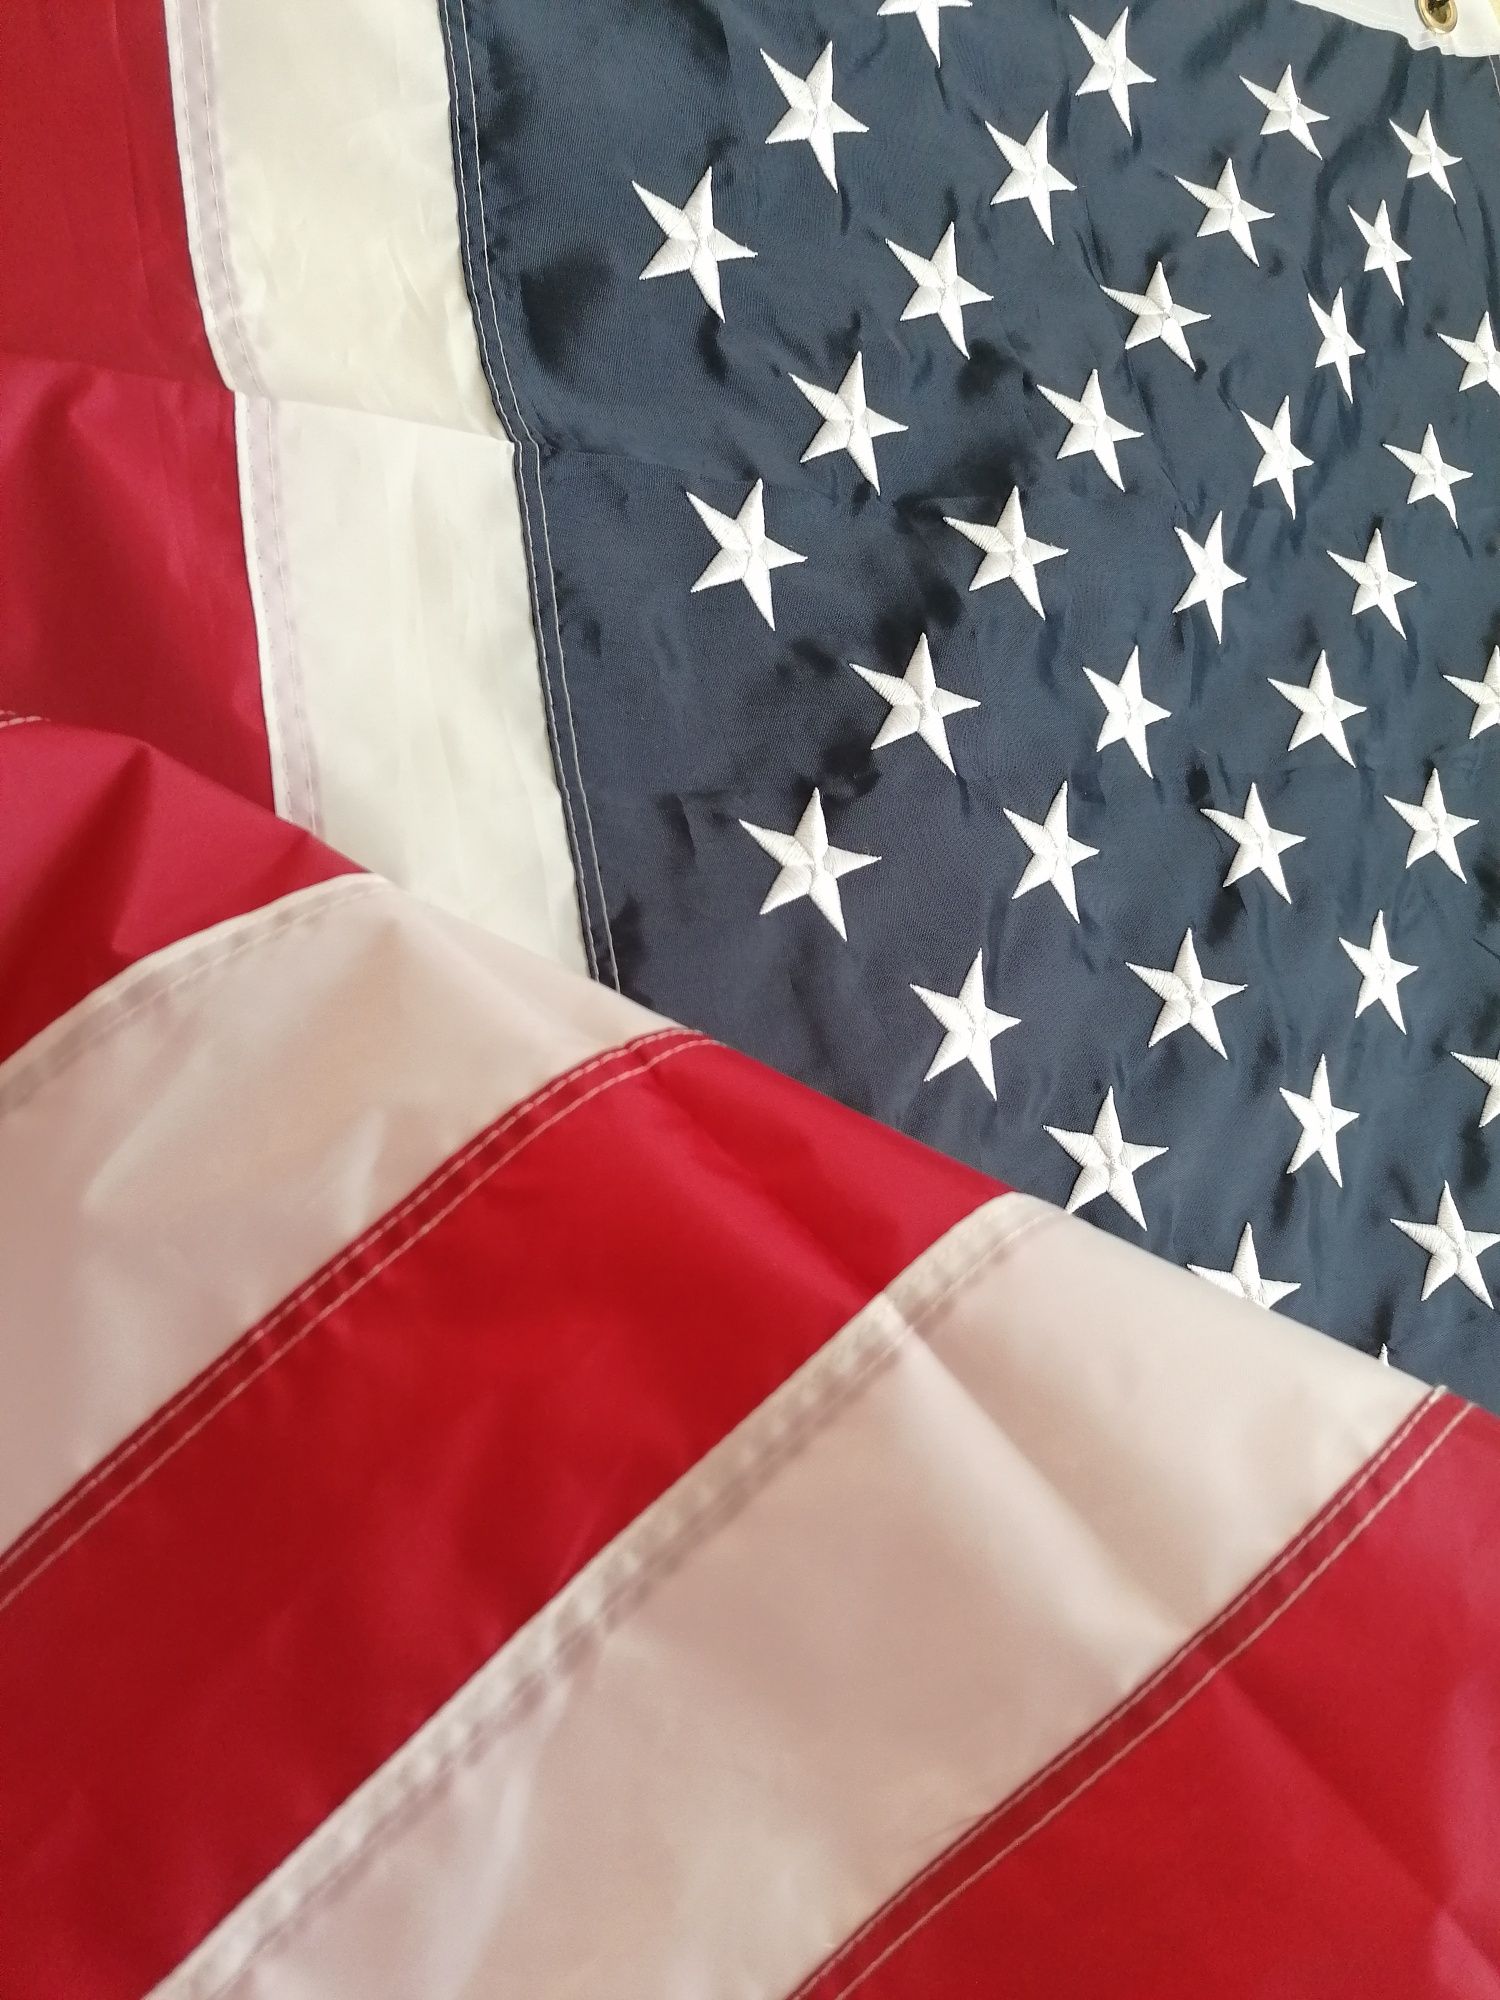 Прапор США Флаг USA звёзды вышиты ниткой. Значки UA-USA